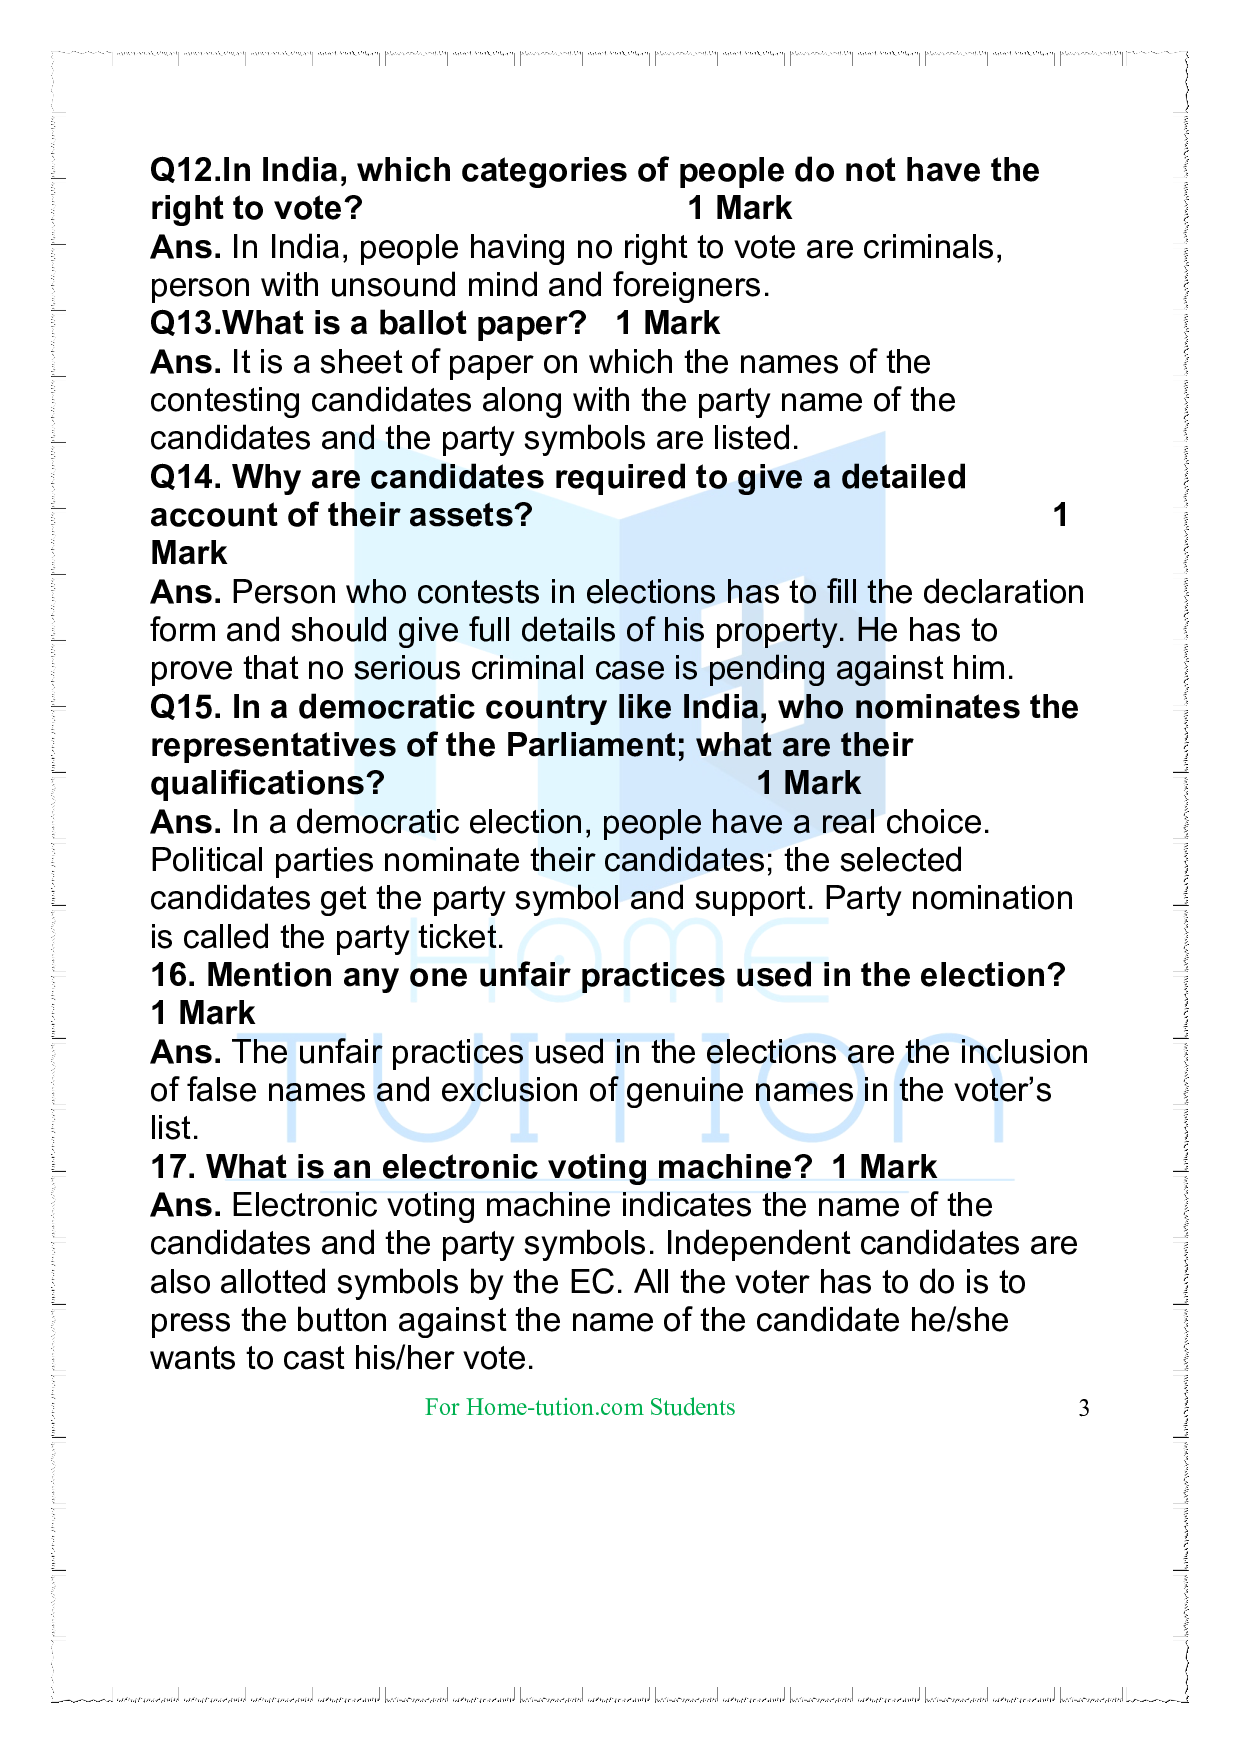 Questions for Class 9 Civics Chapter 3 Electoral Politics